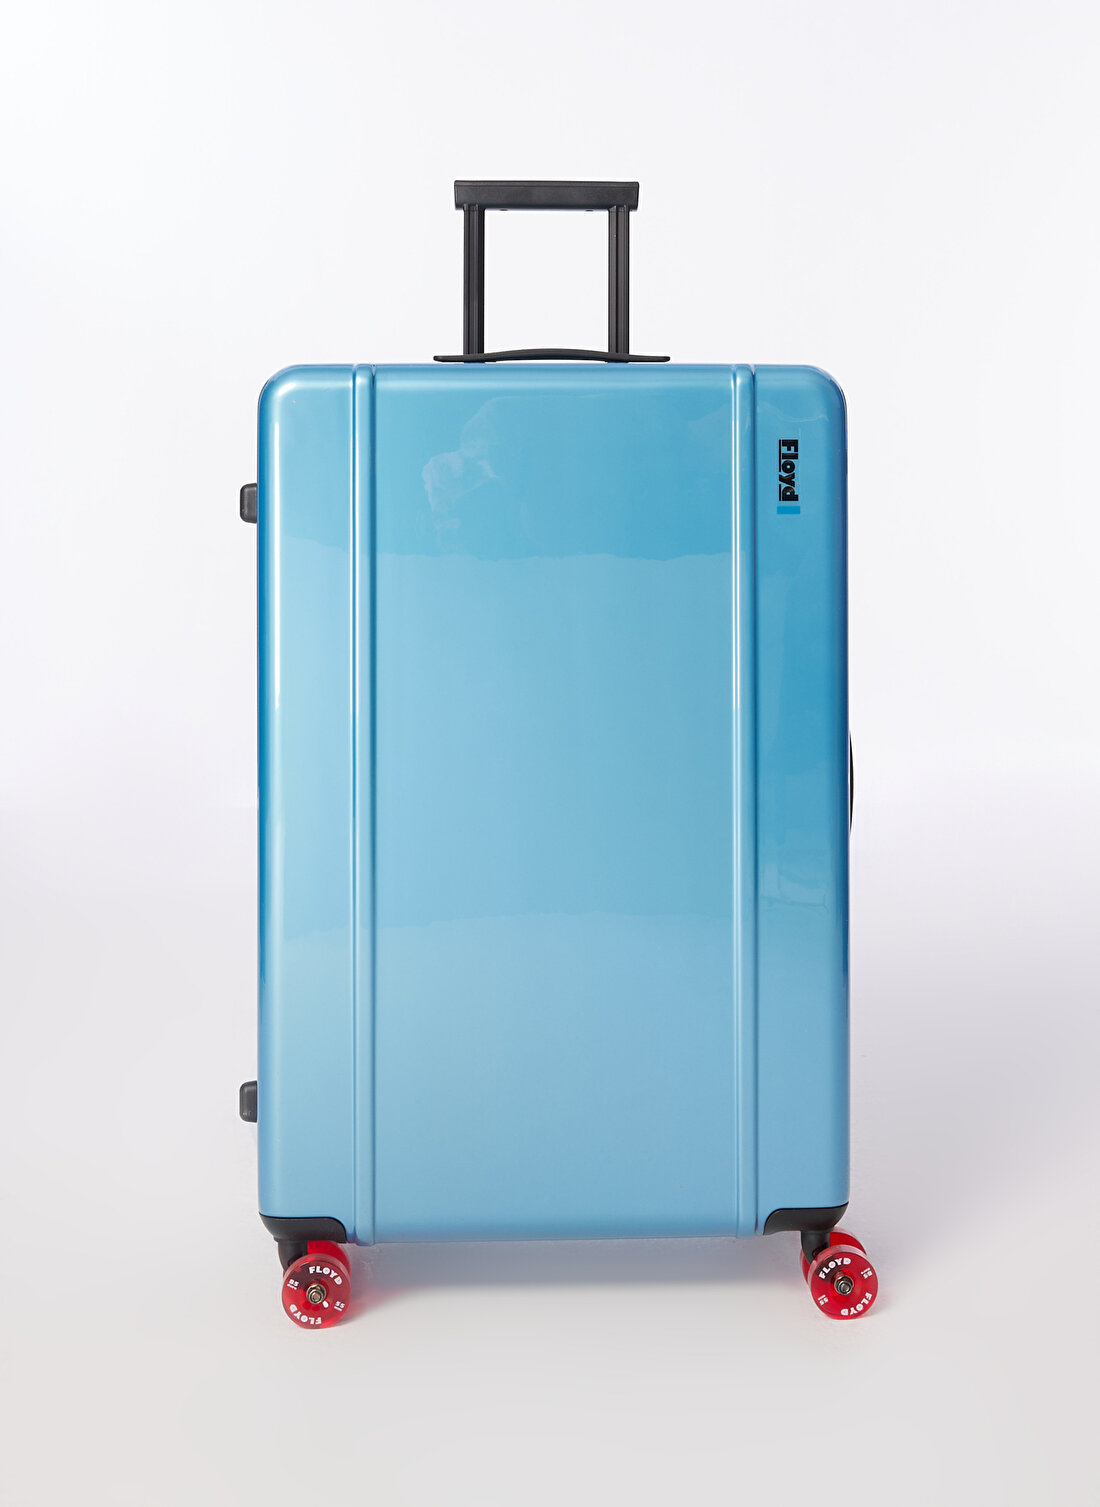 Floyd Mavi Unisex Fermuarlı 50 cm x 78 cm x 29 cm Çekçekli Sert Valiz